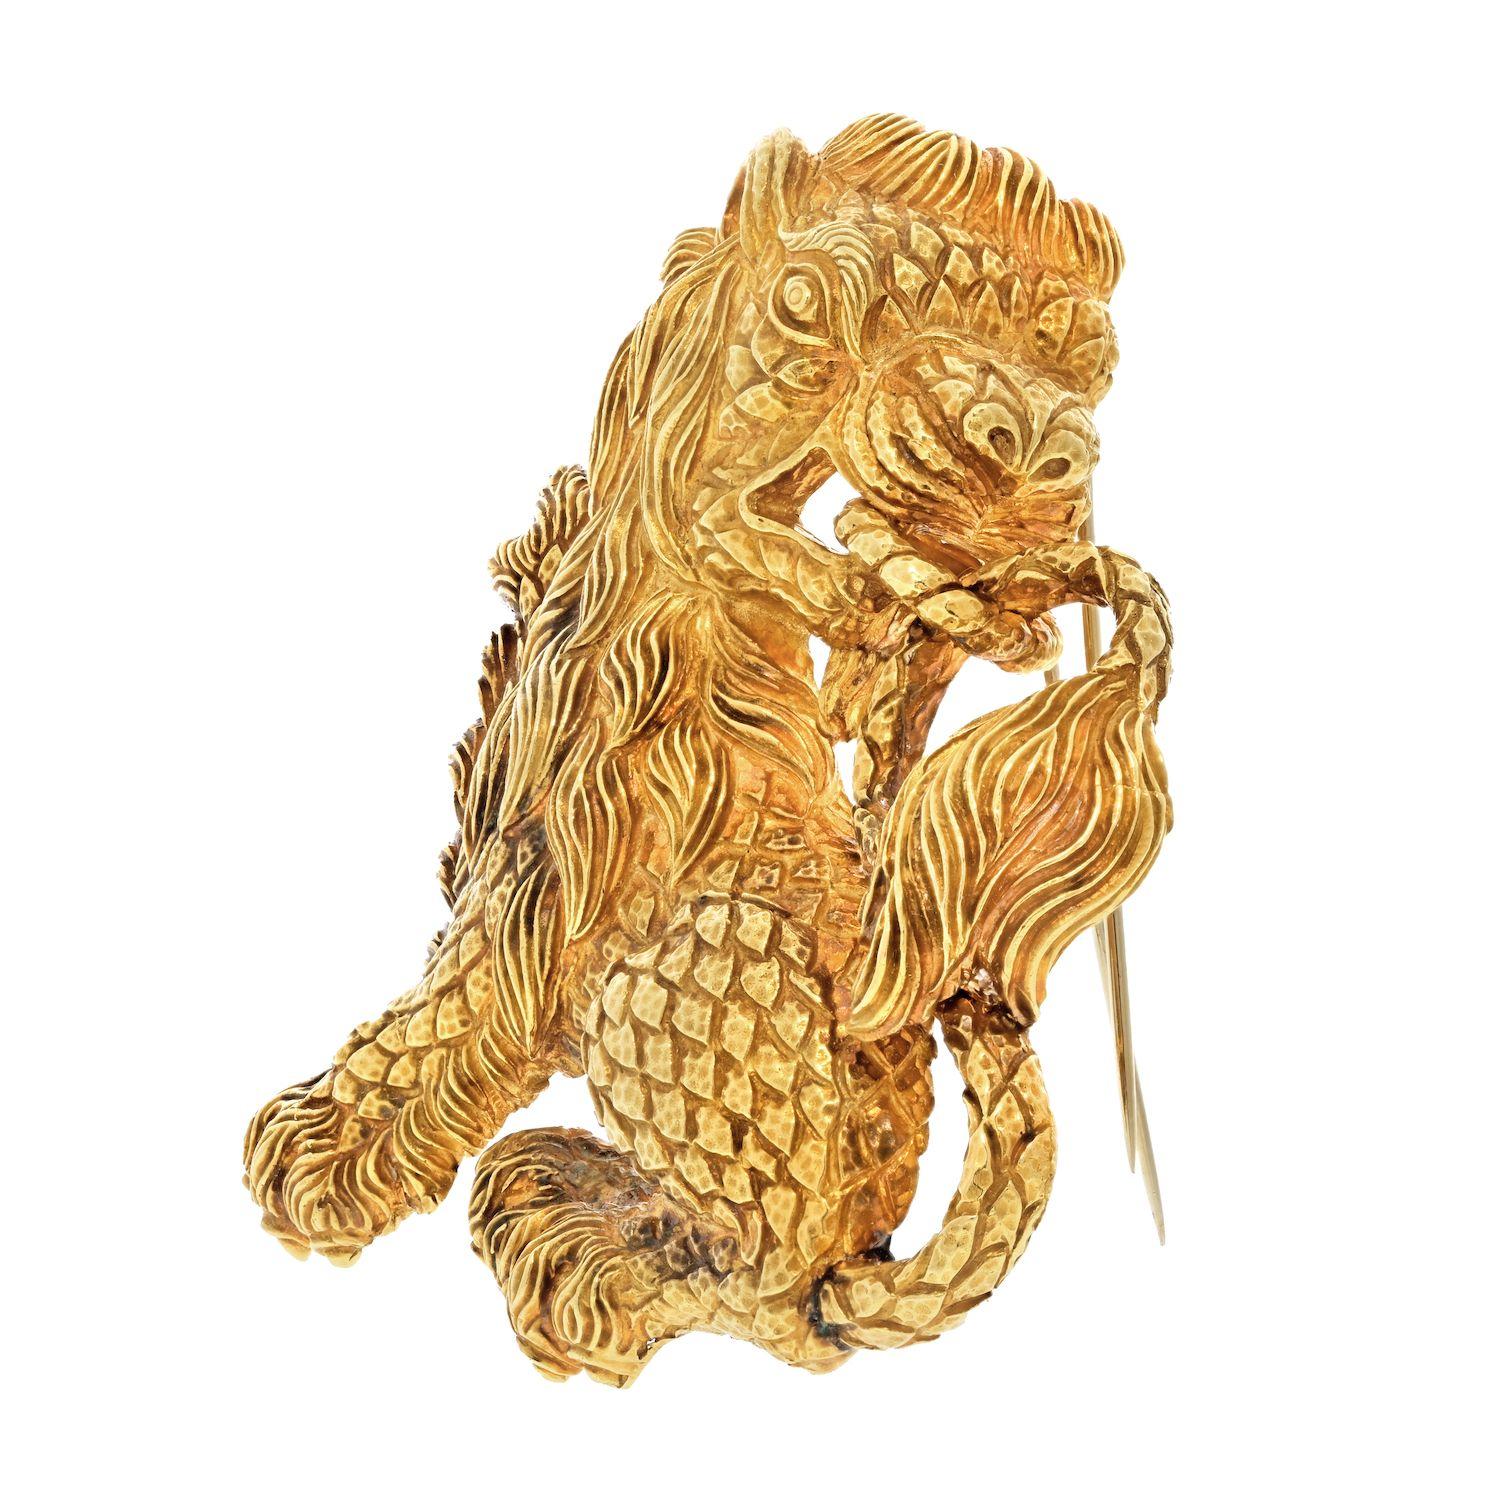 Libérez la reine qui sommeille en vous avec la magnifique broche David Webb Lion en or jaune 18 carats. Cette pièce impressionnante est un symbole de force et de puissance, réalisée avec une précision et une finesse extrêmes. Lorsque vous vous